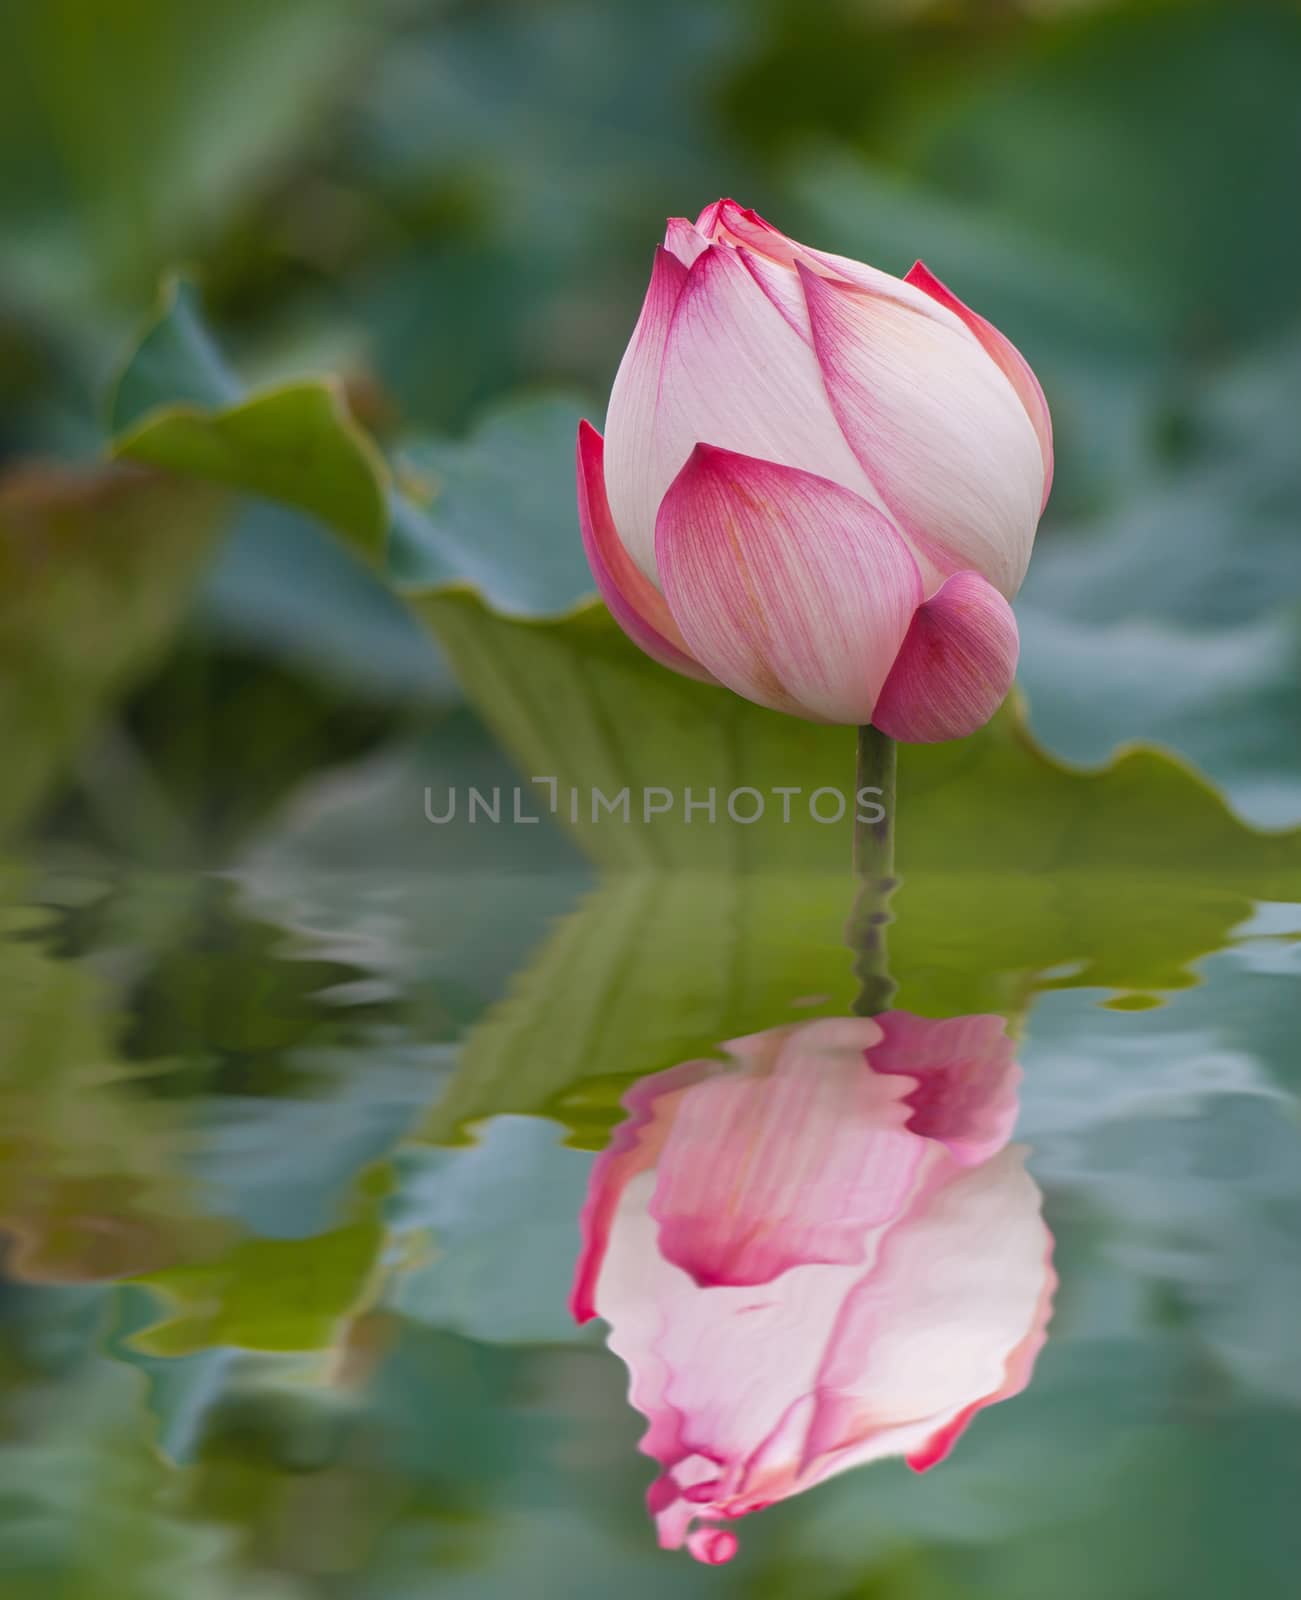 beautiful lotus flower in blooming